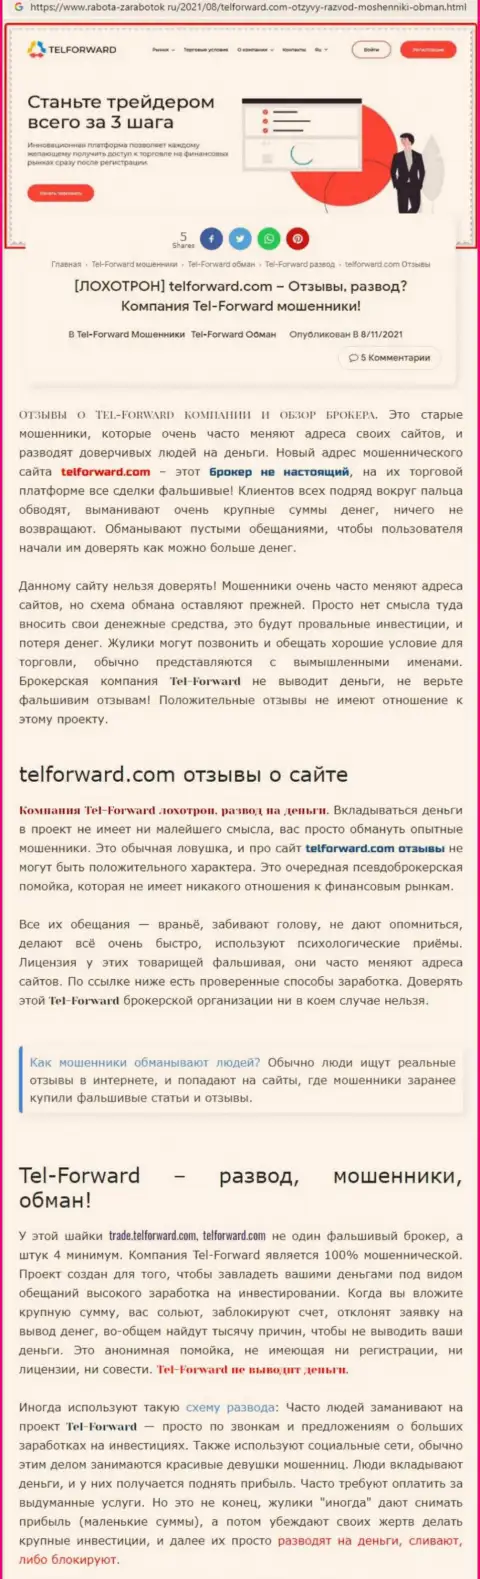 Tel-Forward - это МОШЕННИКИ !!! Условия совместного трейдинга, как ловушка для лохов - обзор мошеннических действий